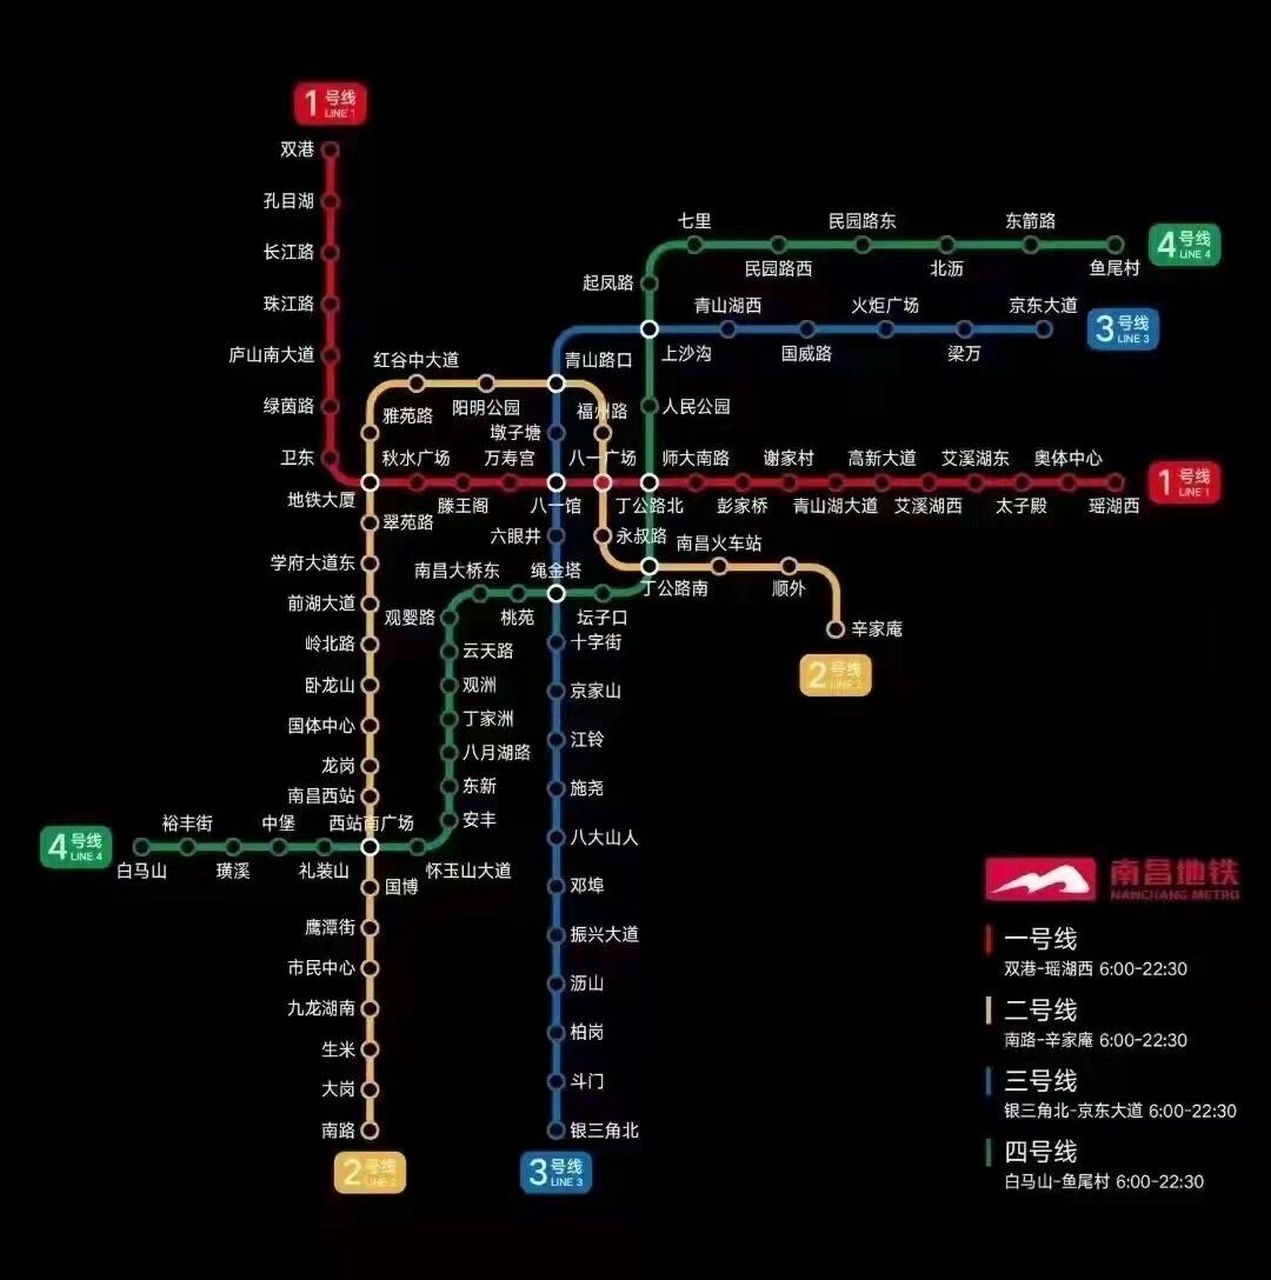 南昌地铁1-6号线路图图片